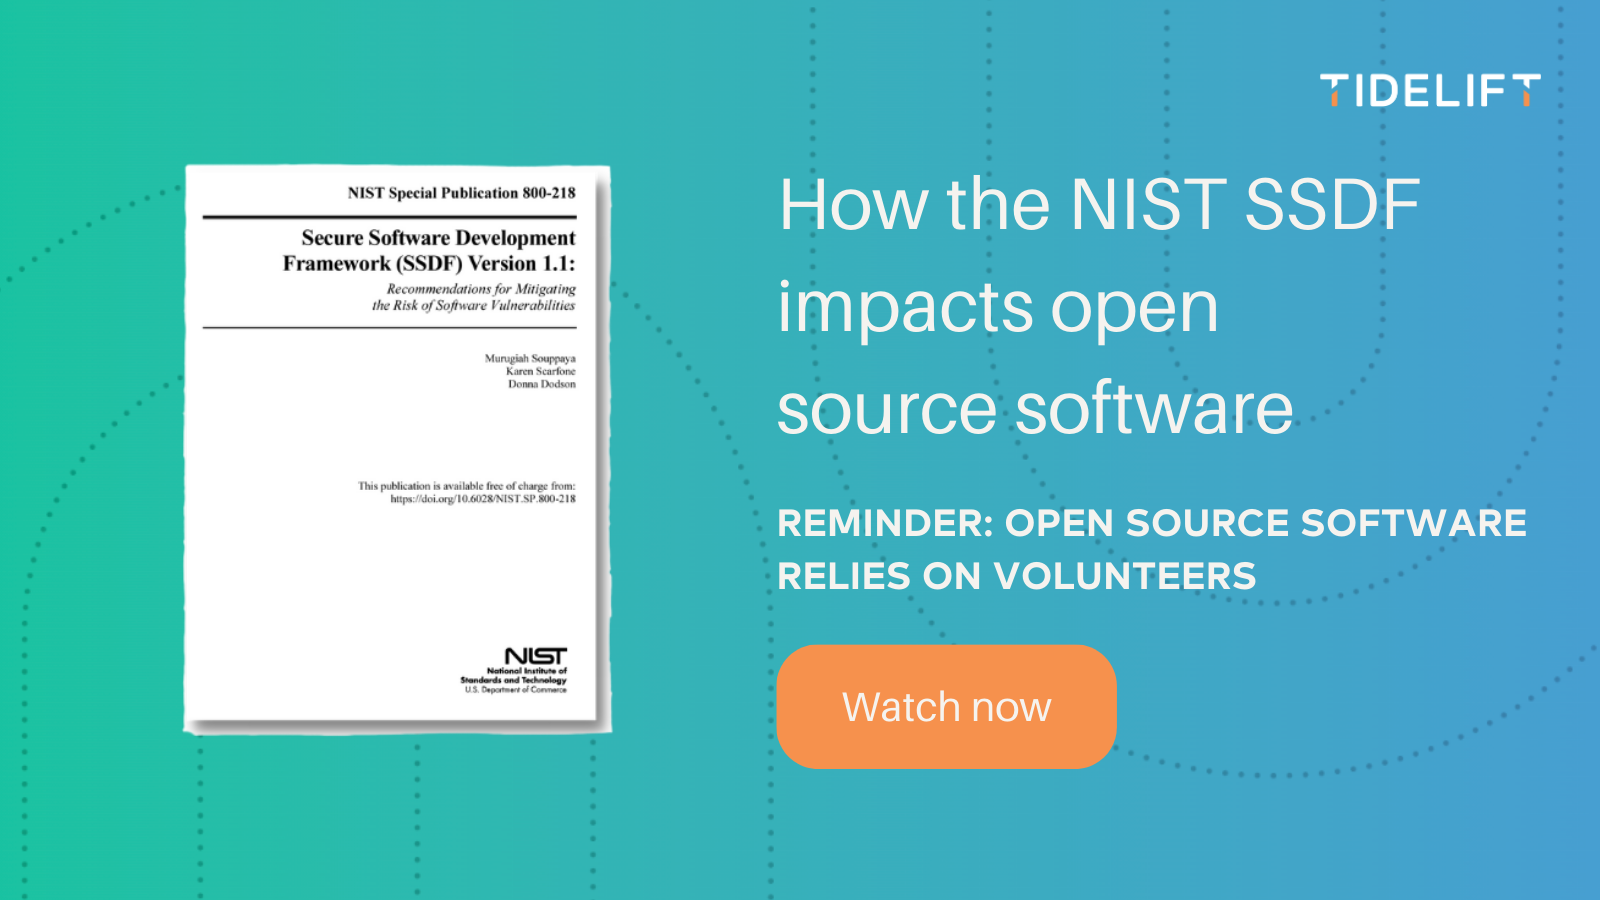 Reminder: open source software relies on volunteers